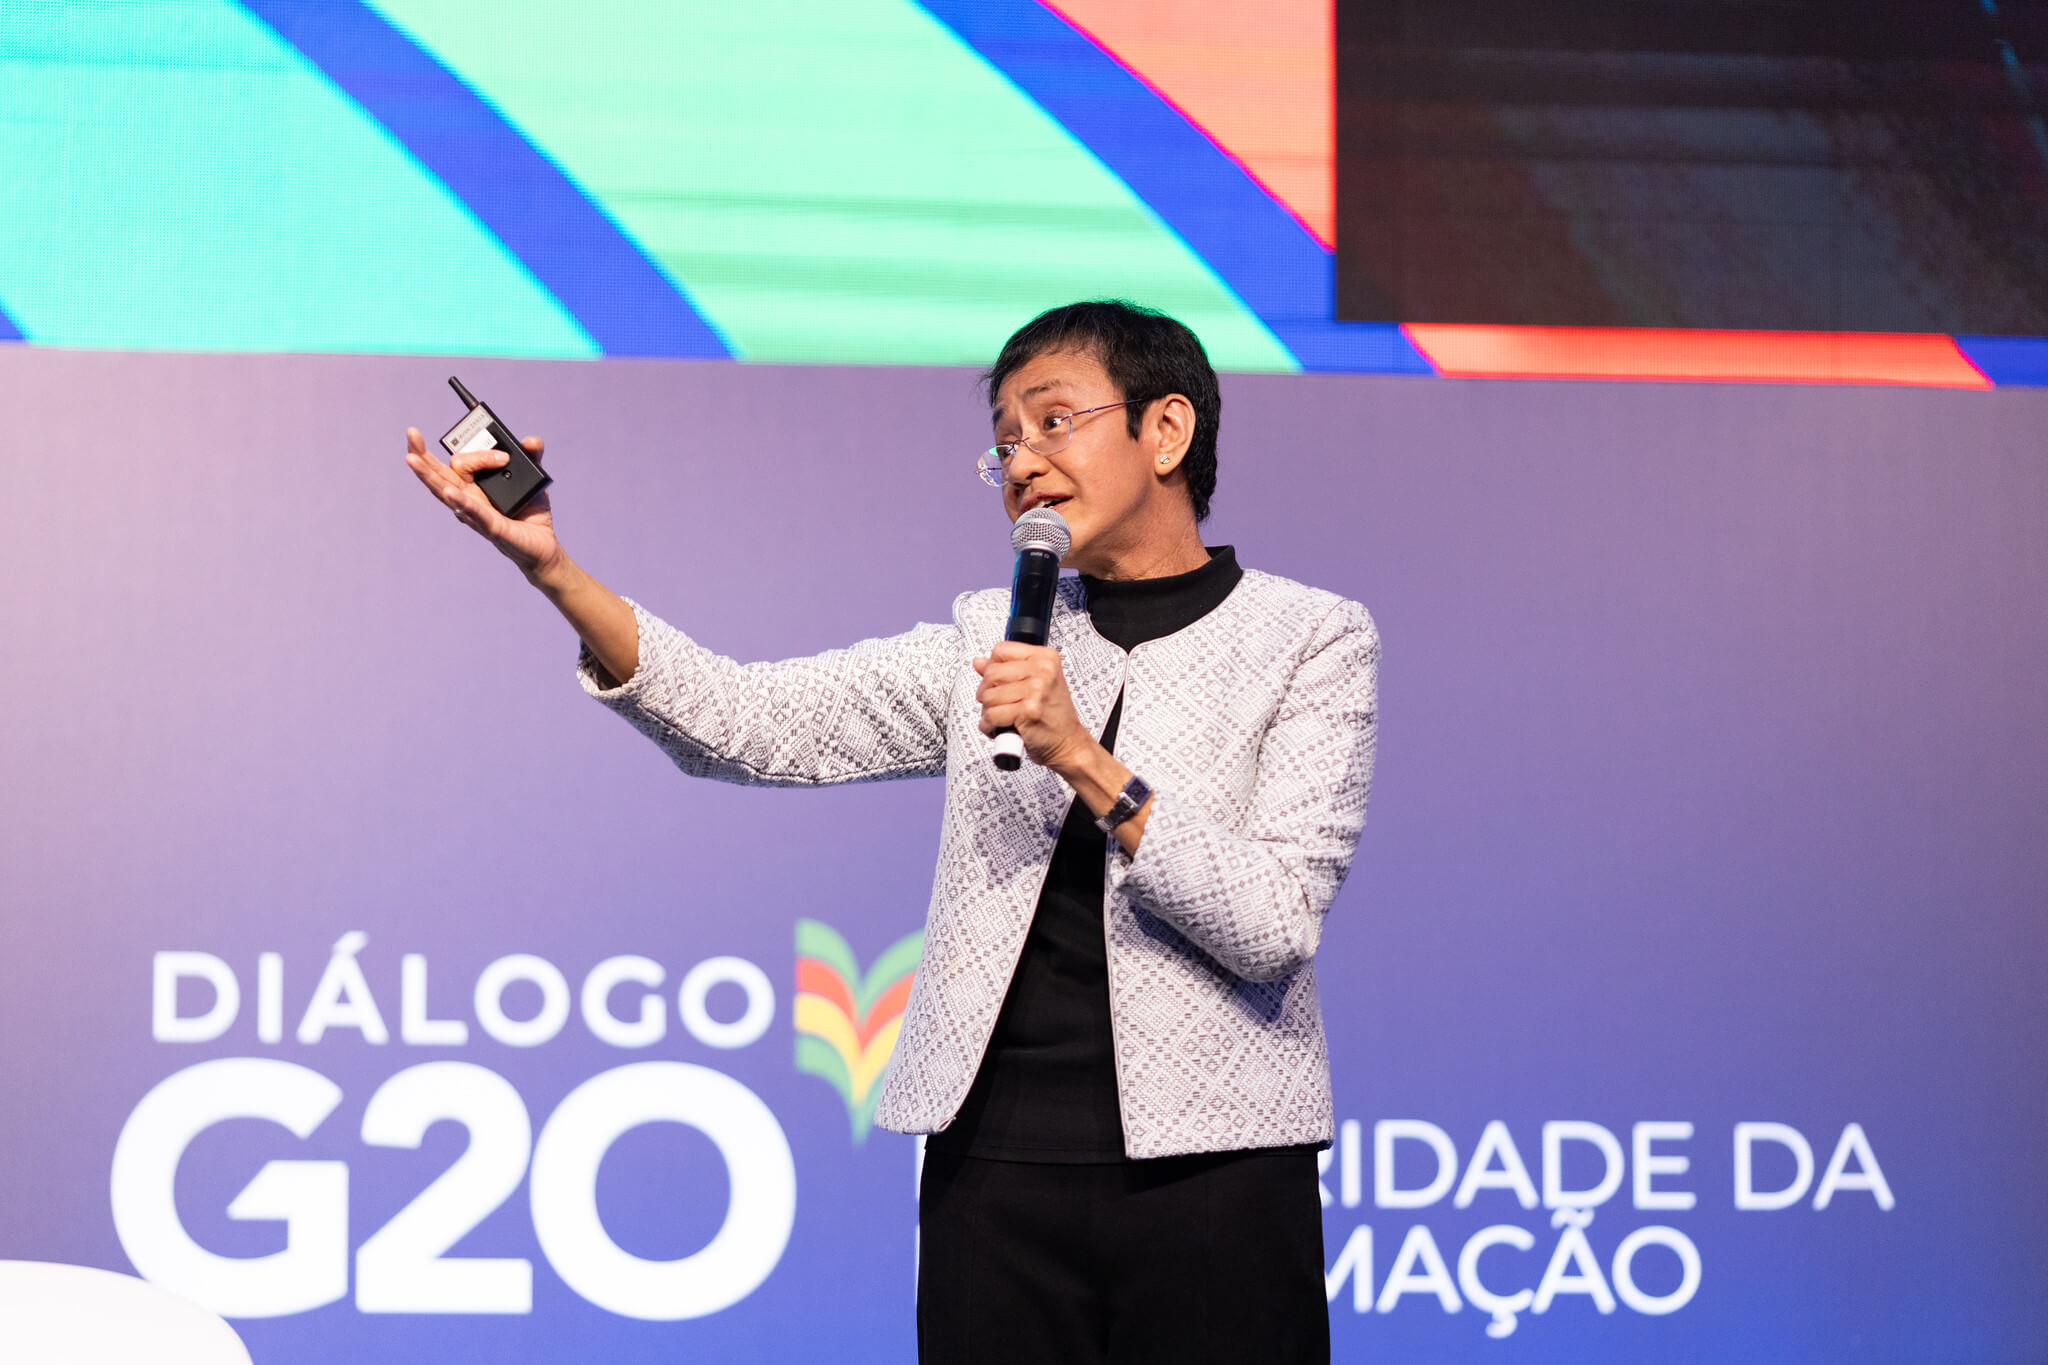 Maria Ressa destacou a importância da integridade da informação e a necessidade da regulação das plataformas digitais para promover liberdades fundamentais e garantir a democracia | Foto: Audiovisual G20 Brasil